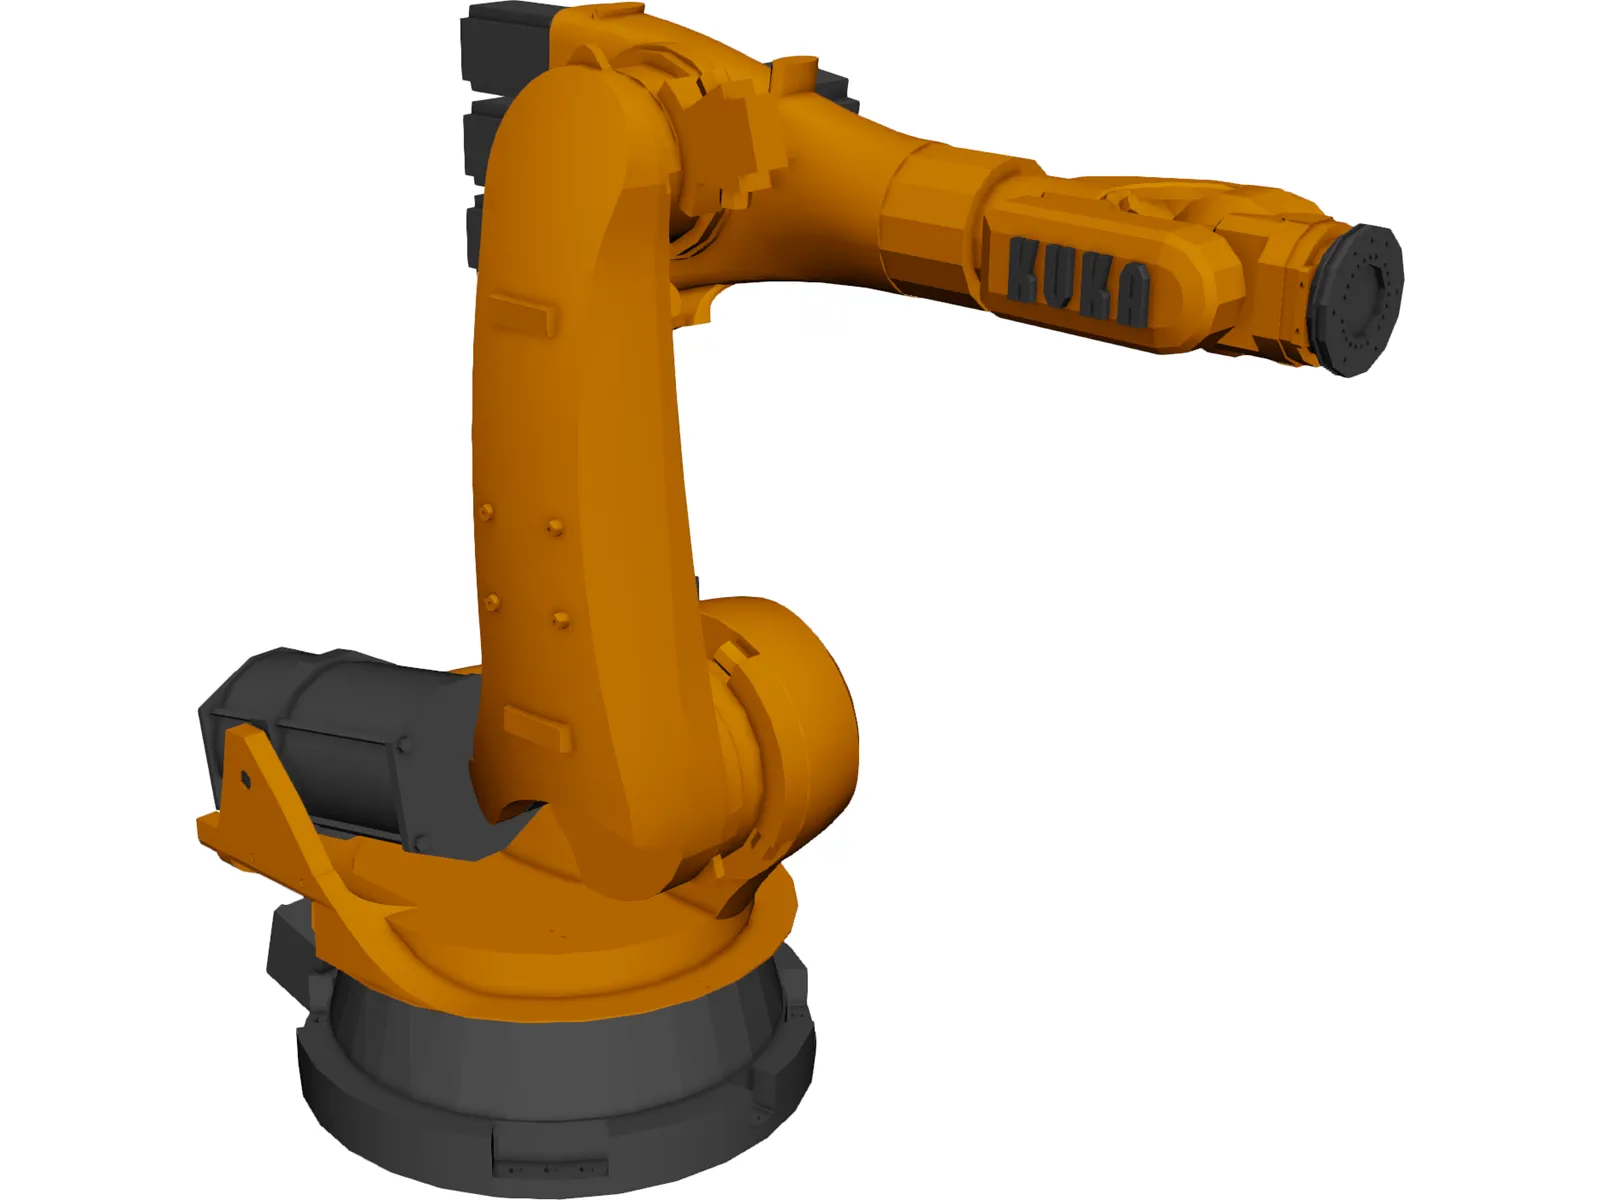 Kuka KR100-140 Robot 3D Model